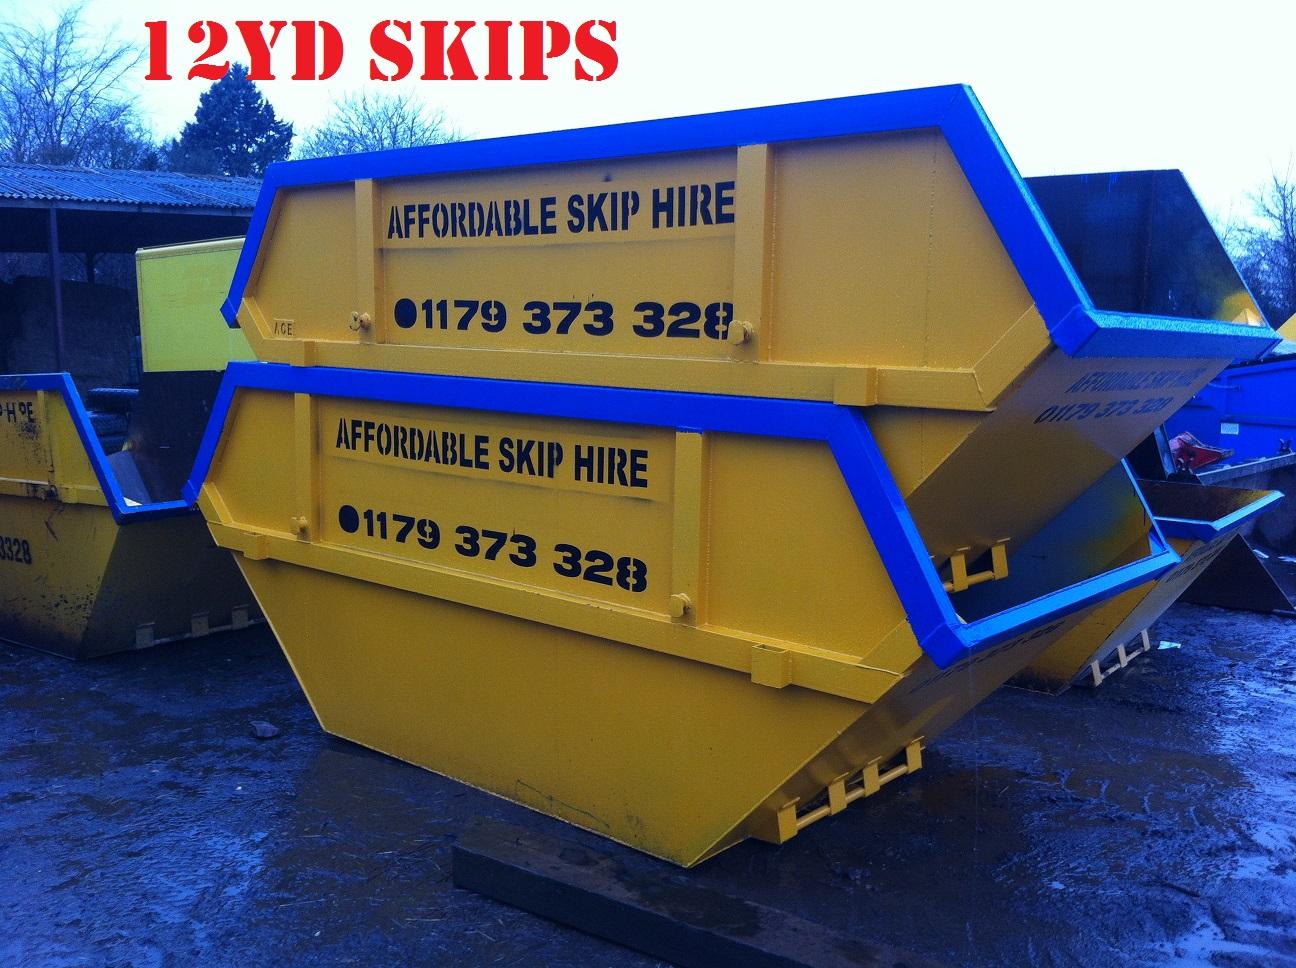 Affordable Skip Hire Bristol Ltd Bristol 01179 373328